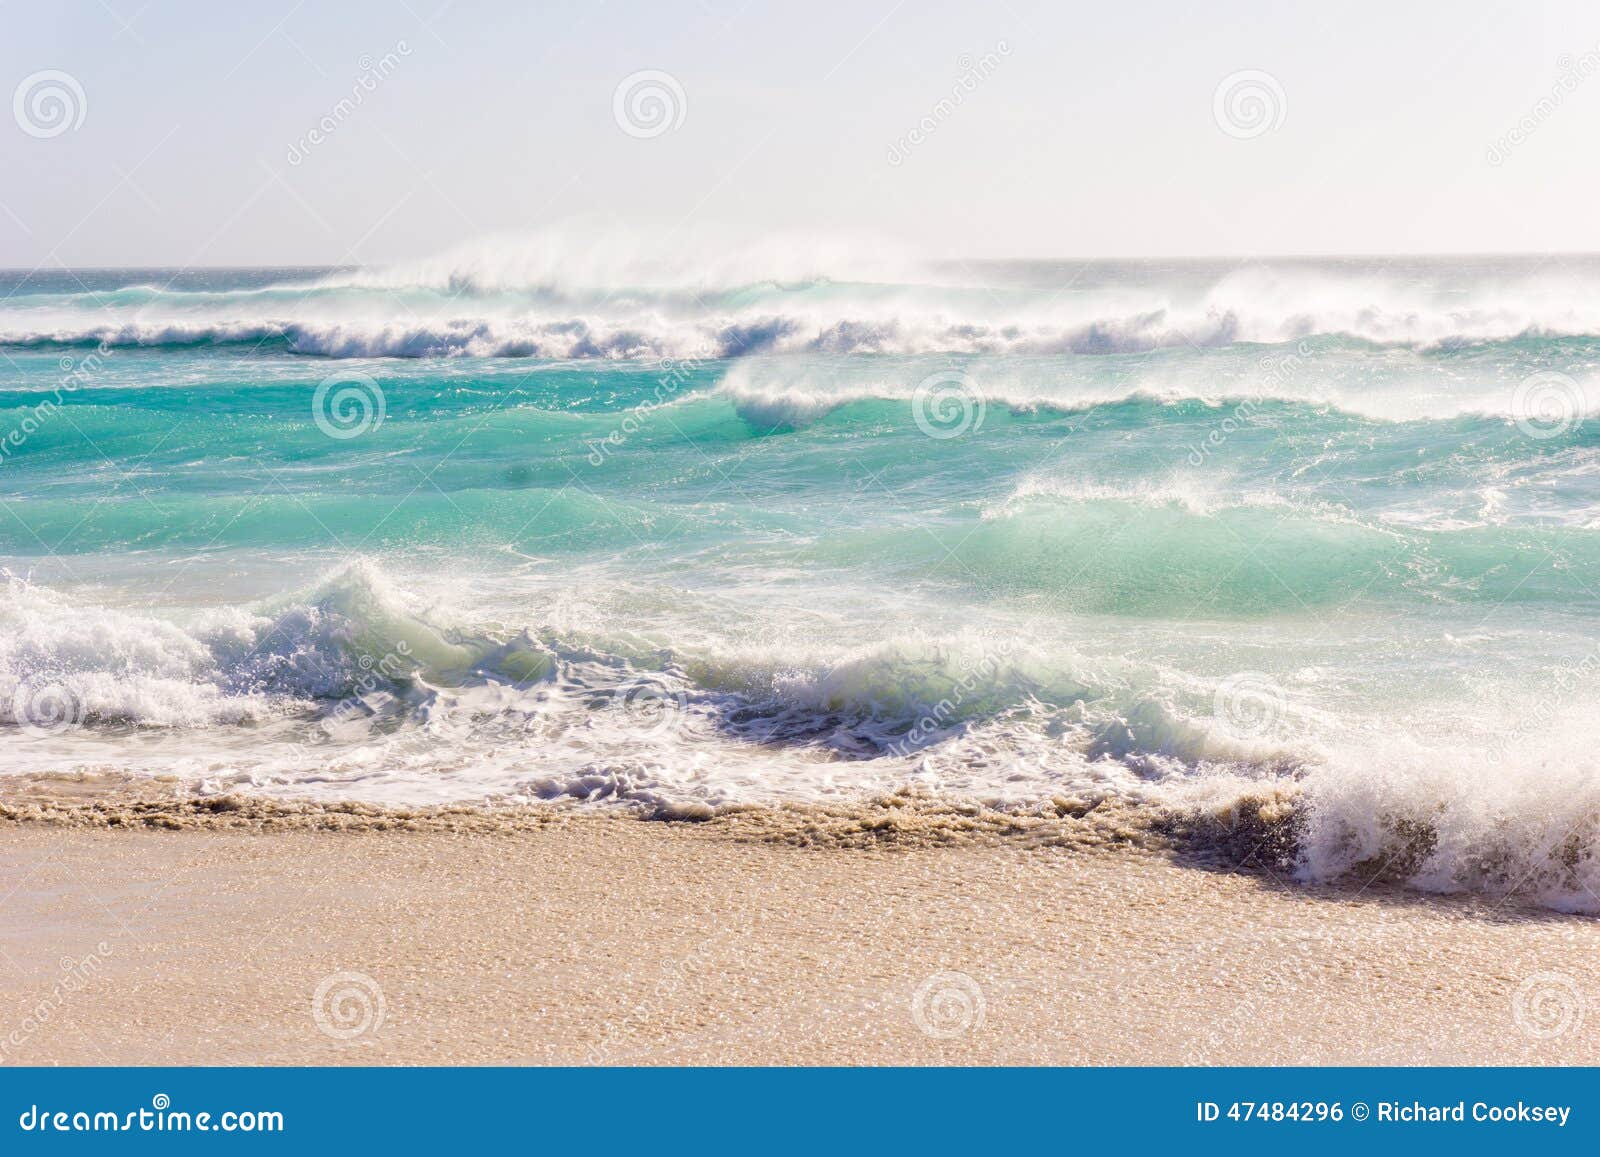 beach rough sea waves